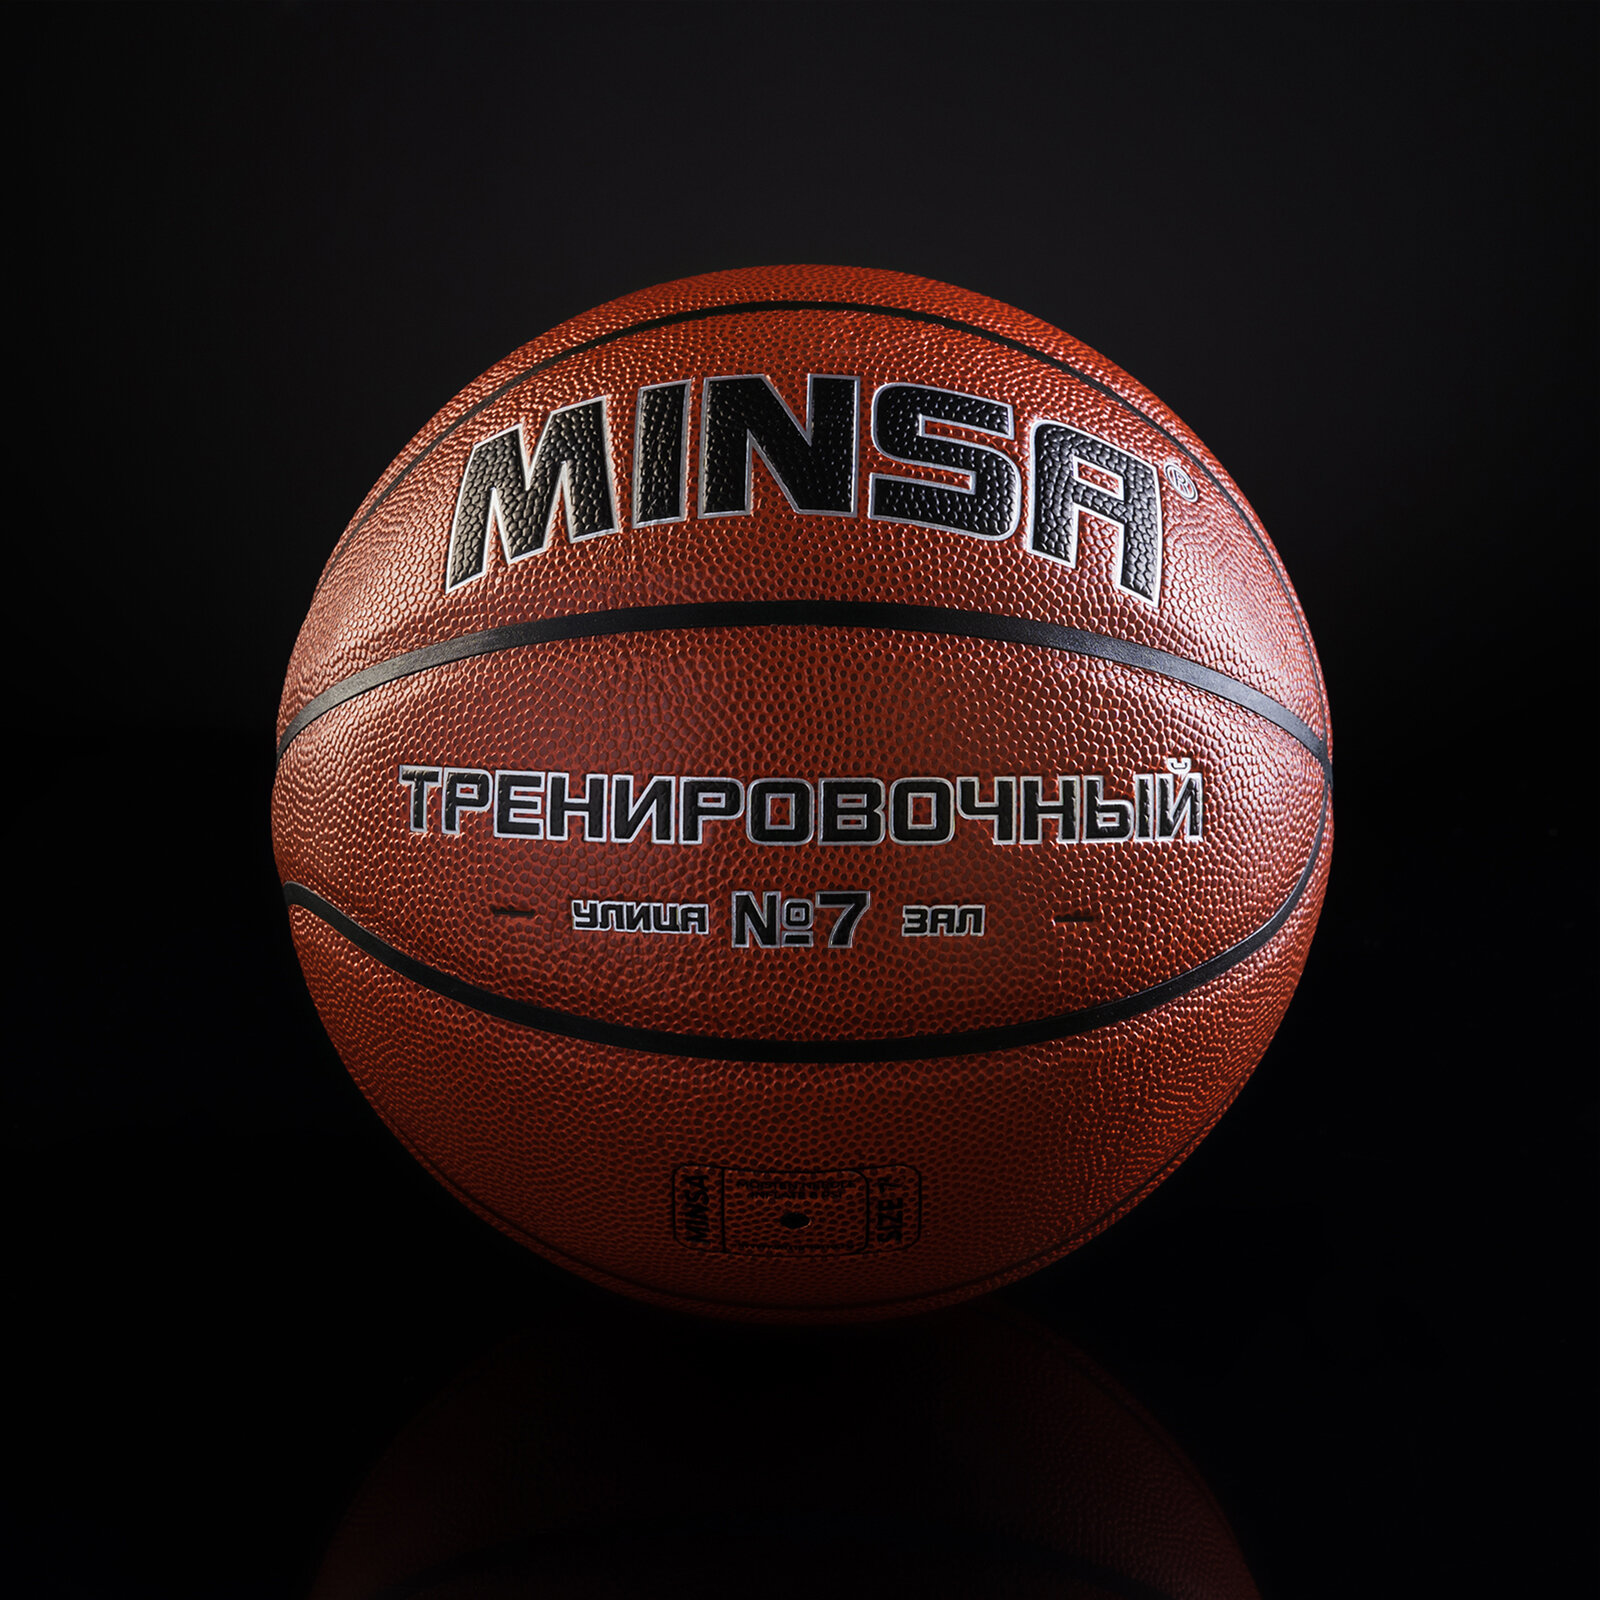 Баскетбольный мяч MINSA, тренировочный, PU, размер 7, 600 г